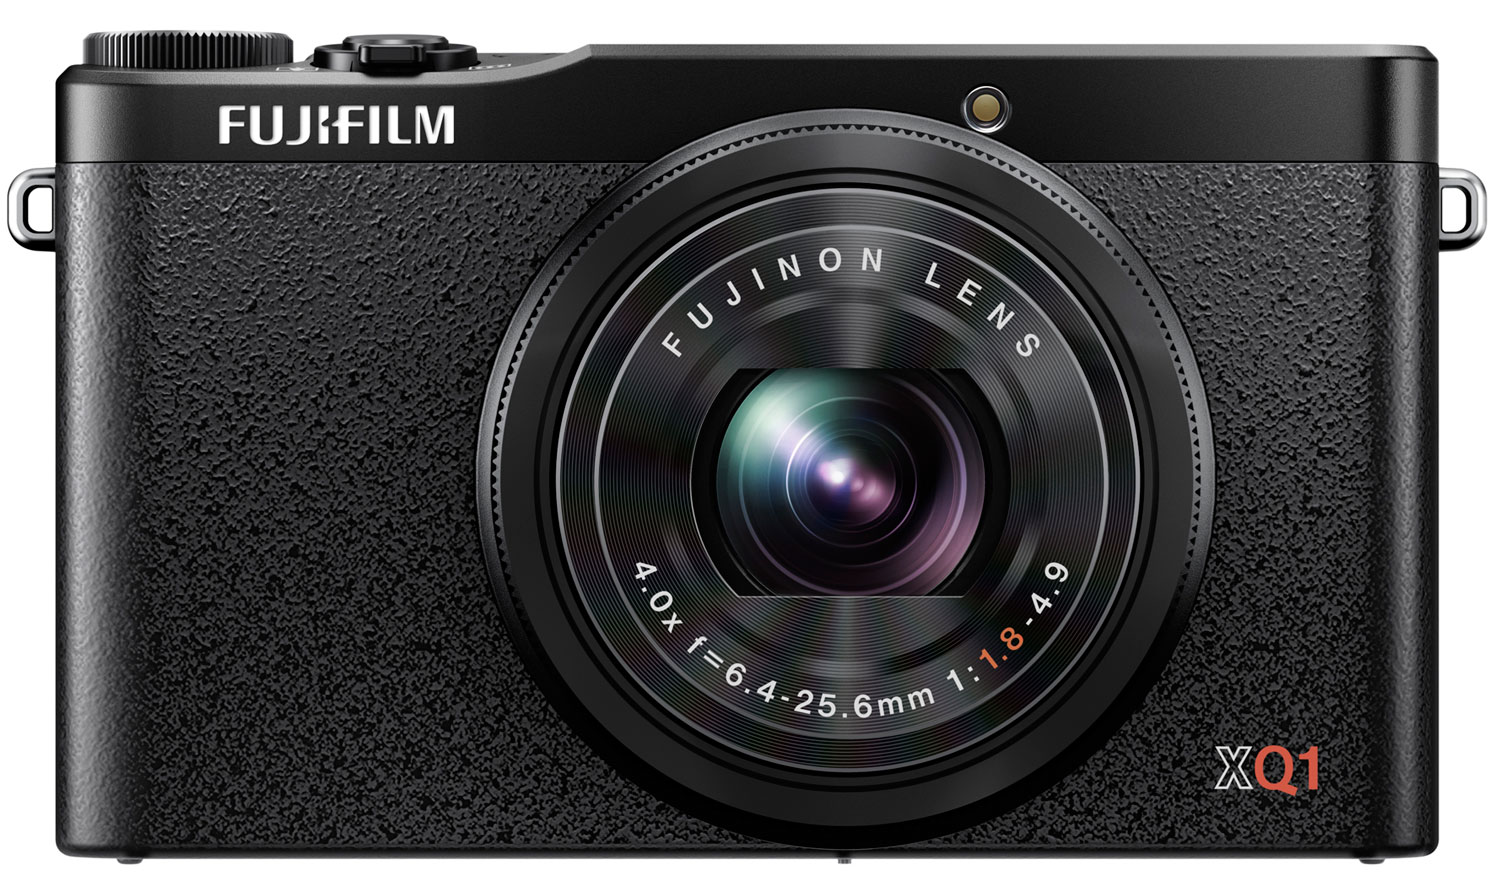 Fujifilm XQ1 Digital Camera